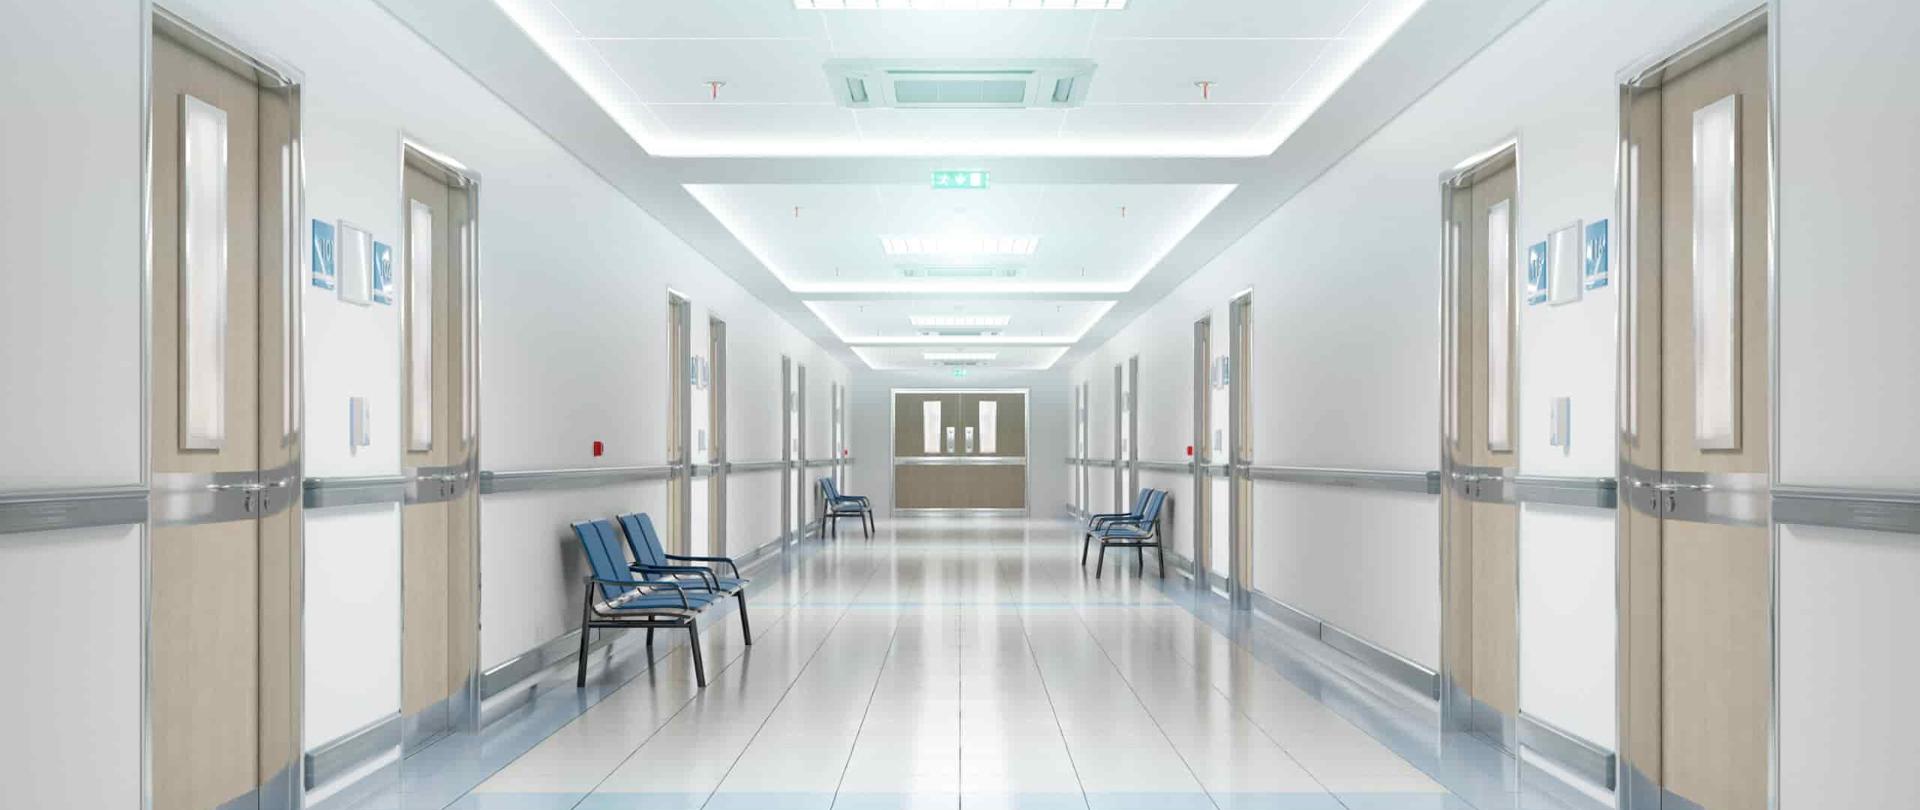 Na zdjęciu przedstawiono korytarz znajdujący się w szpitalu. Po obu stronach znajdują się krzesła oraz drzwi. 